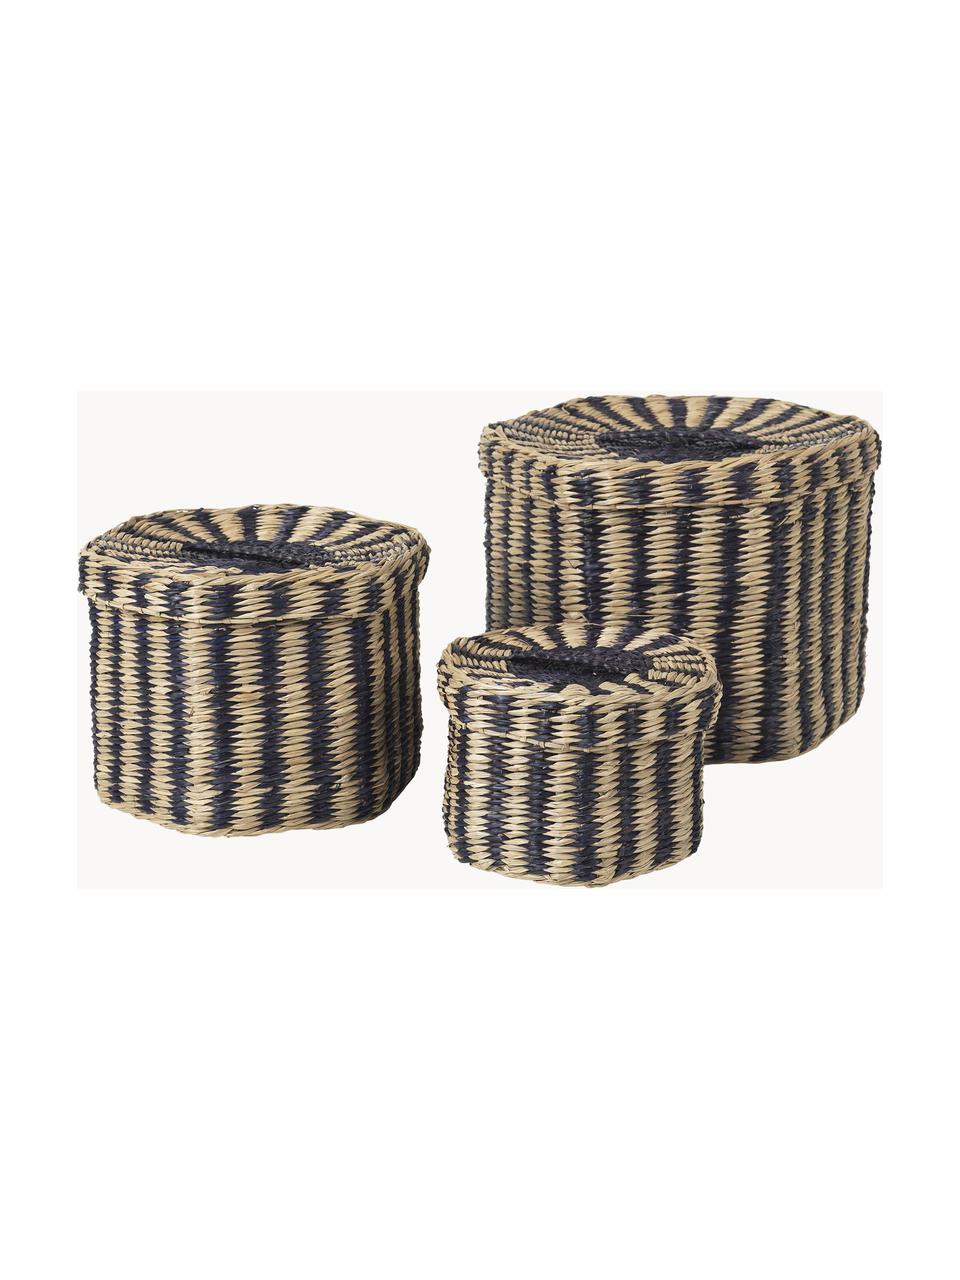 Set de cestas artesanales de jacinto de agua Polly, 3 uds., Seagrass, Beige, negro, Set de diferentes tamaños